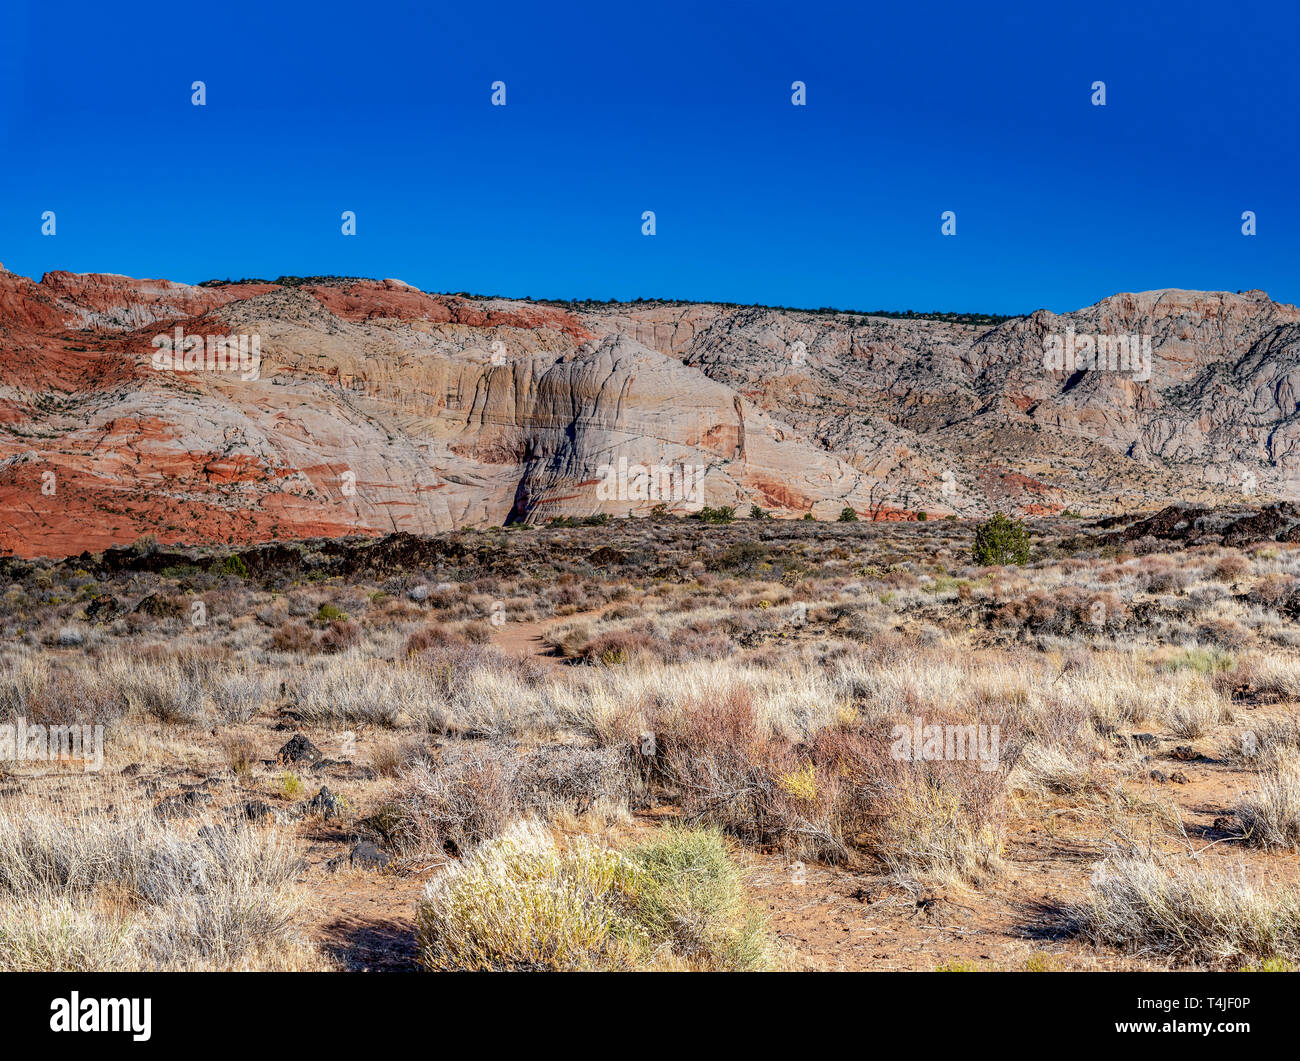 Morto a spazzola del deserto in campi di sabbia che conduce fino a rosso e bianco ripidi canyon aride pareti rocciose sotto un cielo blu chiaro. Foto Stock